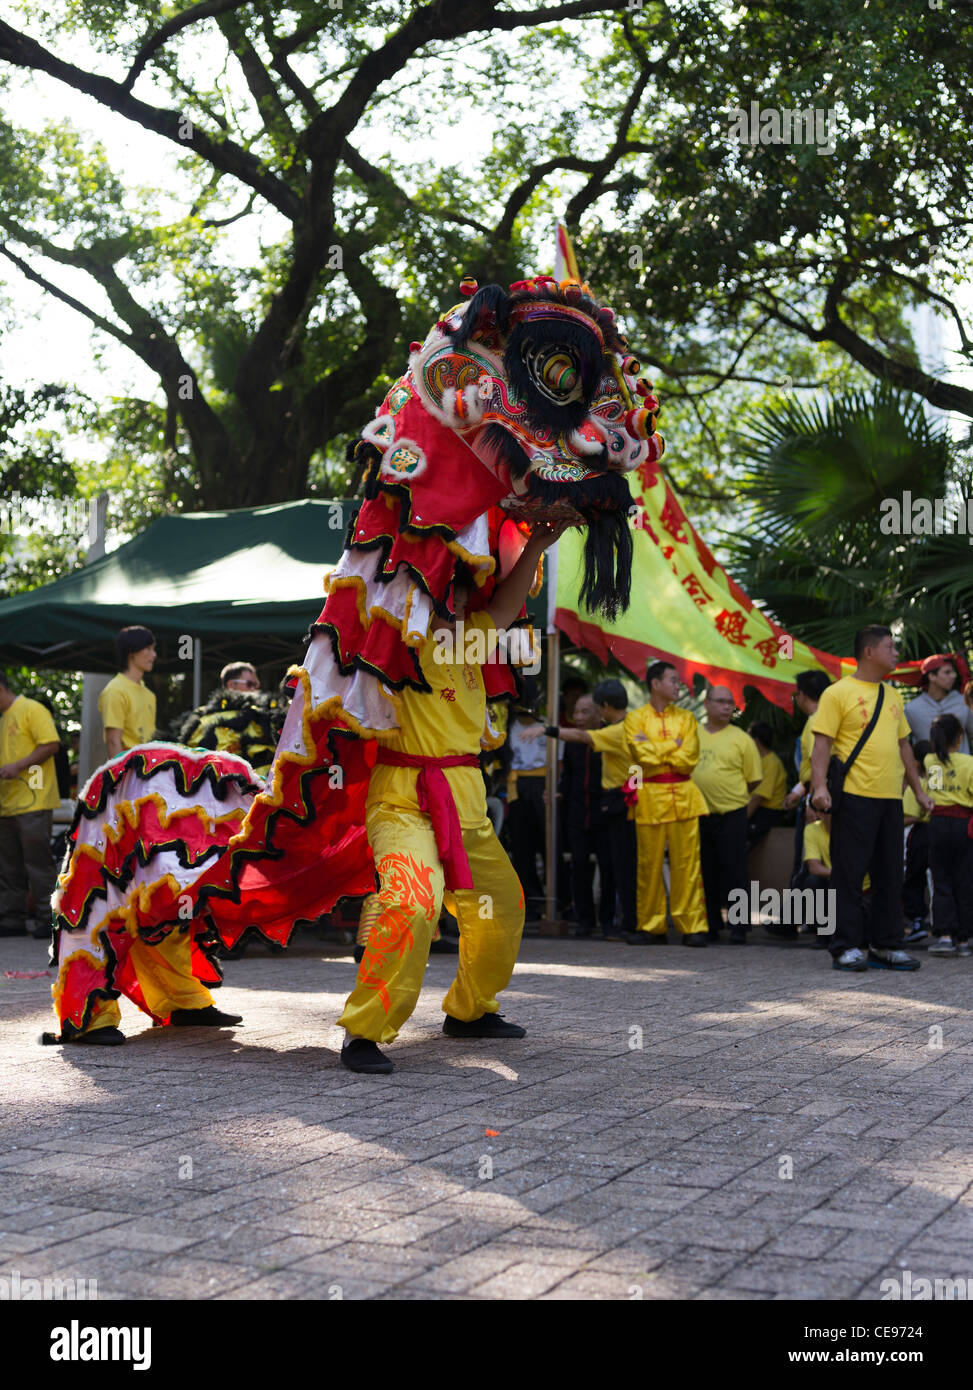 dh Kowloon Park arts martiaux TSIM SHA TSUI HONG KONG garçons chinois spectacle de danse lion chine exécutant la foule de touristes de l'extrême-Orient Banque D'Images